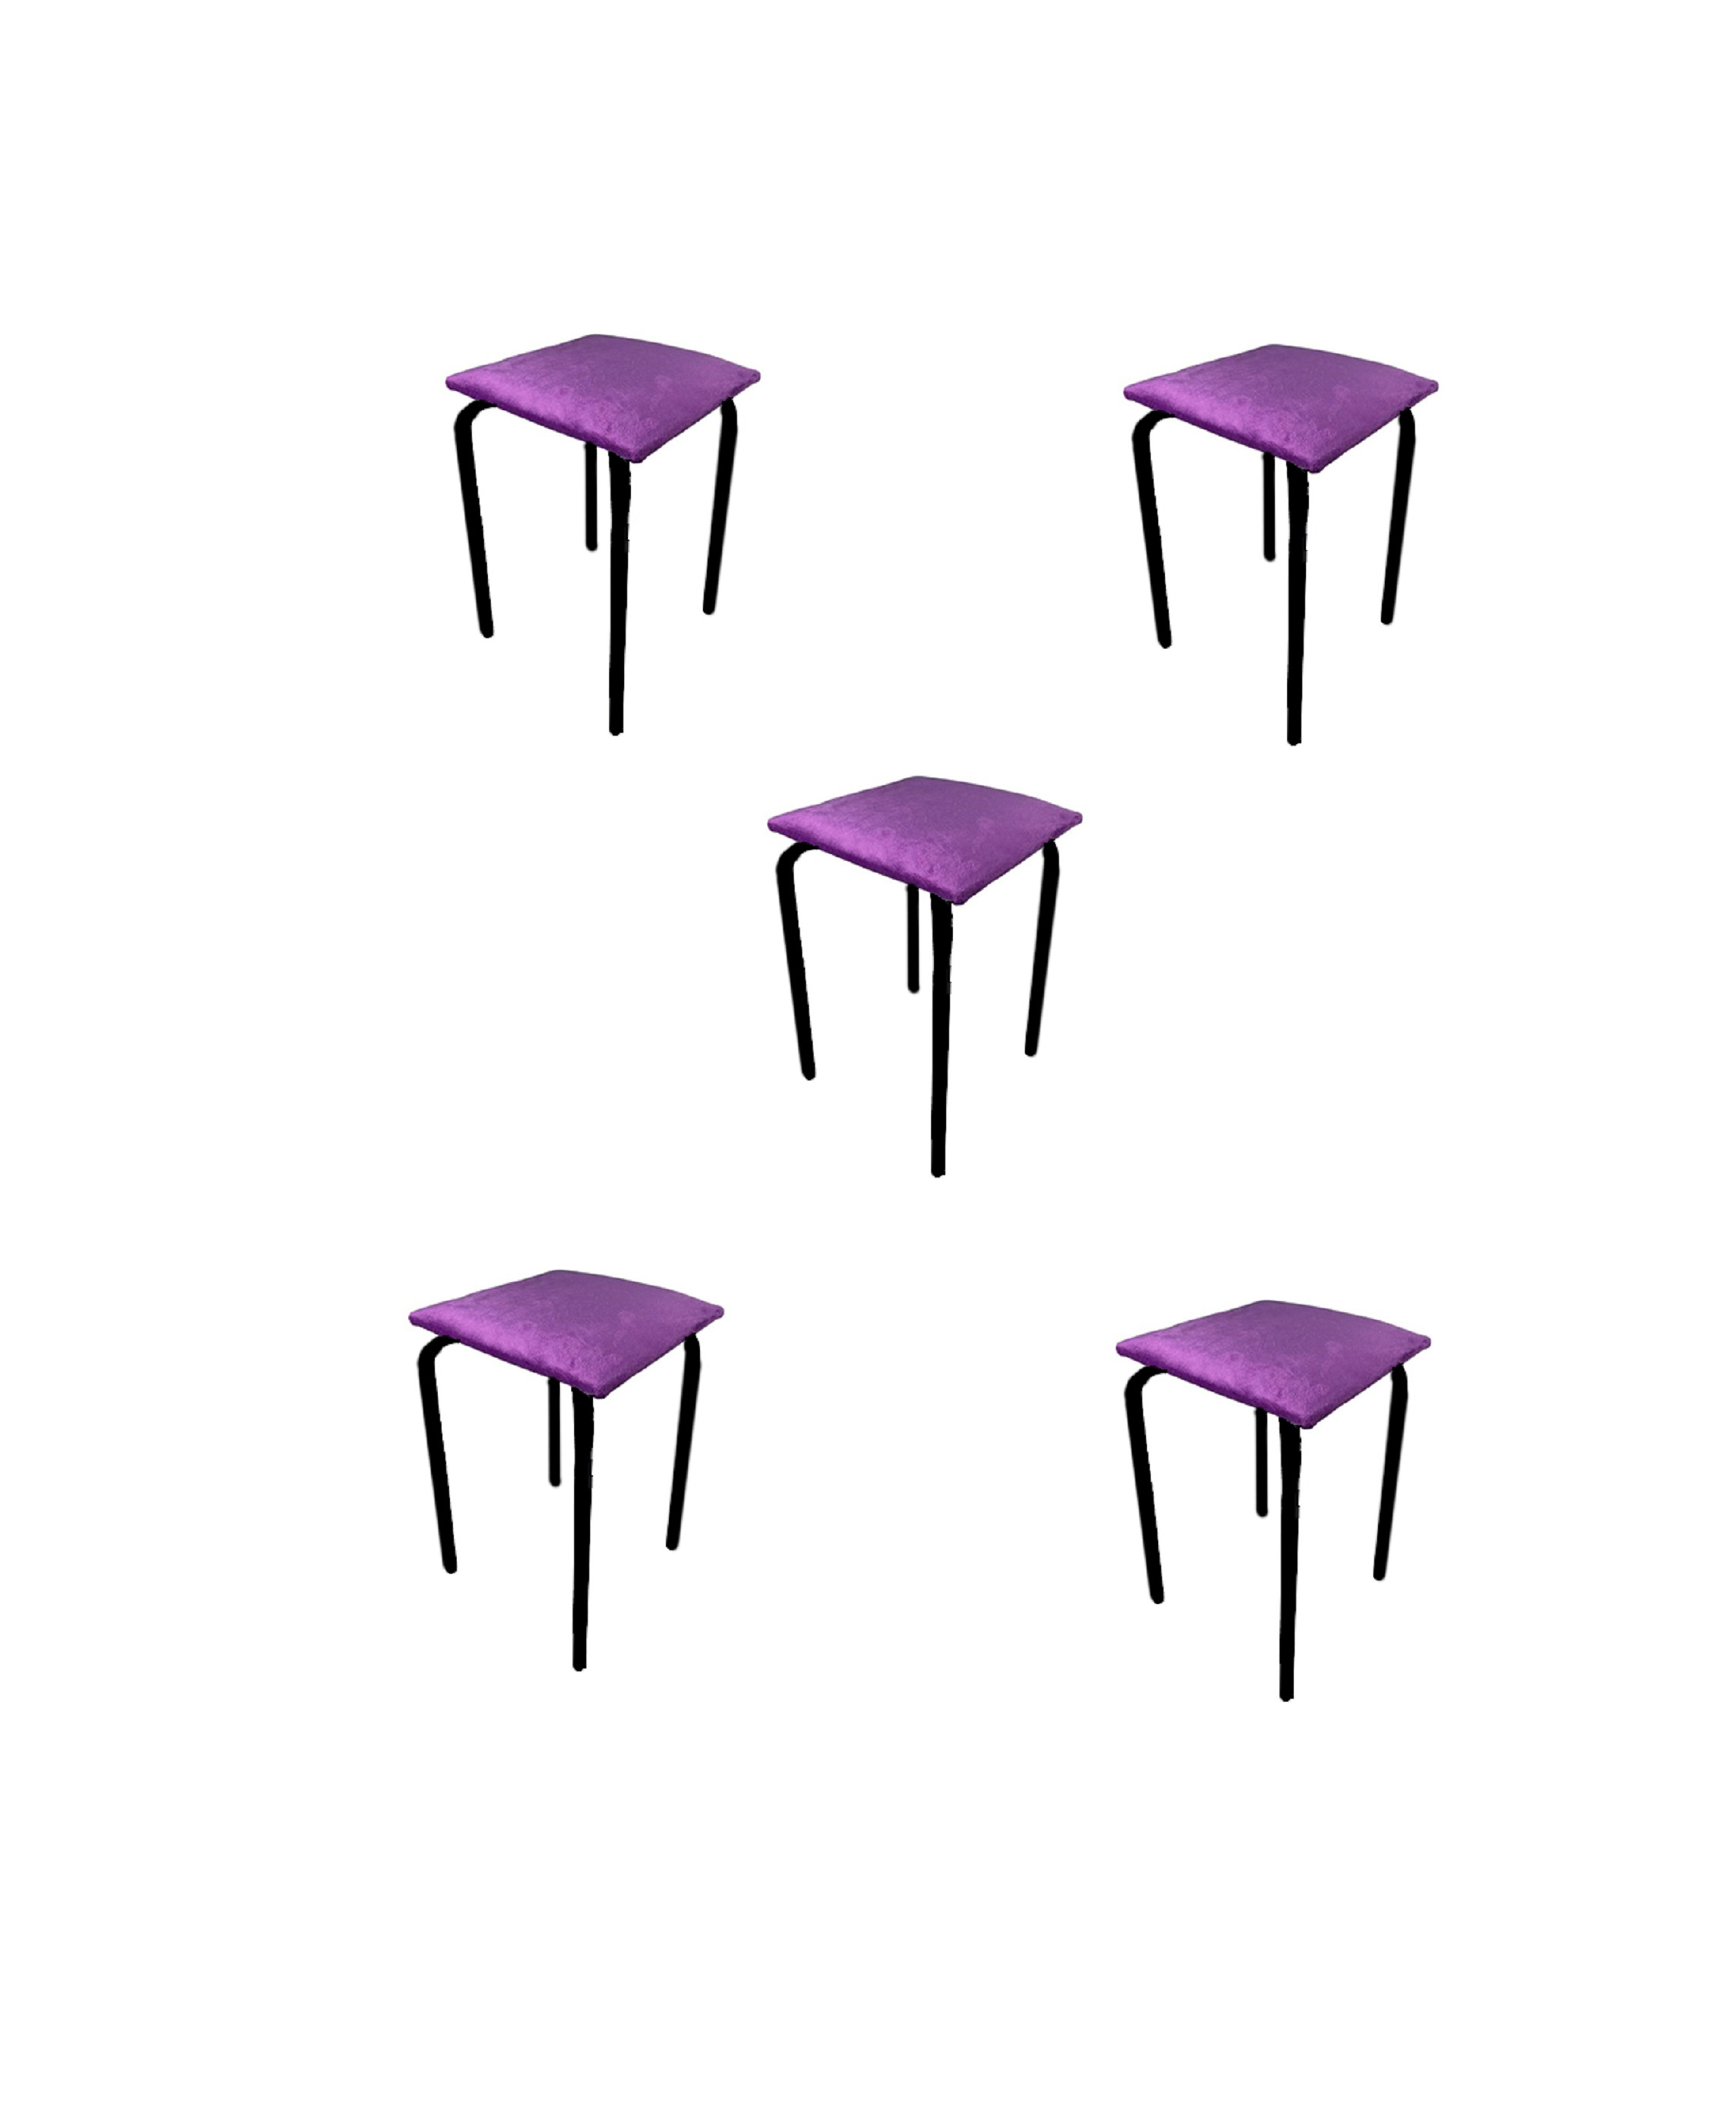 Табурет складной Arrau велюр фиолетовый с мягким сиденьем, 5 шт, нагрузка до 100 кг